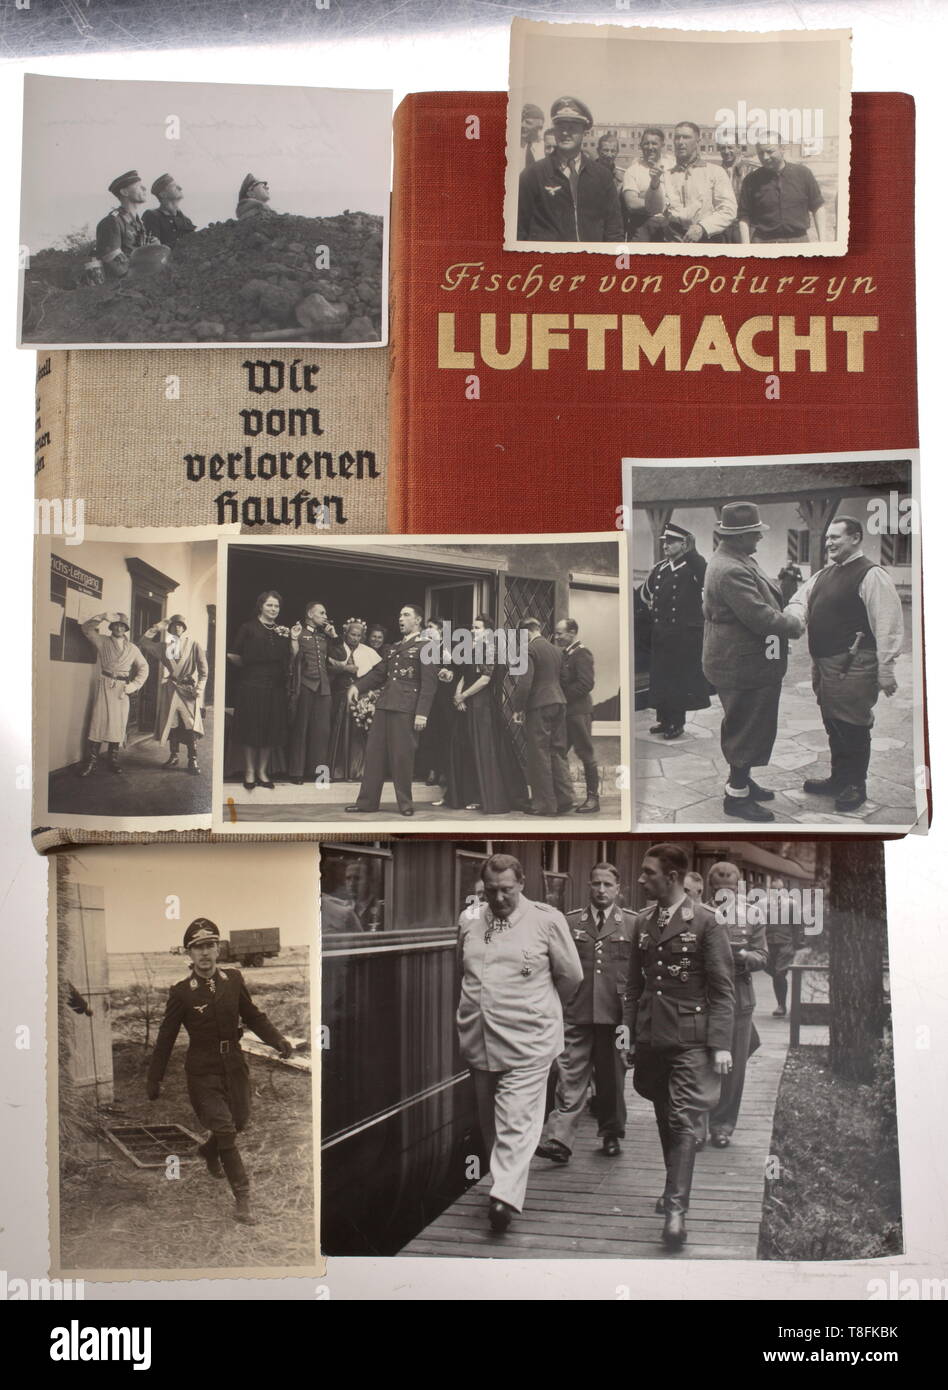 Oberst Werner Mölders - photographies et livres de photographies 18 formats différents : Mölders avec Göring devant son train spécial, avec sa femme, portant un costume de pilote avec des camarades, au cours de sa formation portant une robe et un casque d'acier, sur le sol à regarder un combat aérien, avec elle a aussi trois photographies de Carinhall. Huit livres, 'Luftmacht', Fischer c. Poturzyn, 1938 et 'Wir vom verlorenen Haufen', F. C. Forell, l'flyleaves avec quasiment inscription 'W./Werner Mölders" à élaborer par écrit, "ölders und seine Männer', F. C. Forell, estampillé signatu, Editorial-Use-seulement Banque D'Images